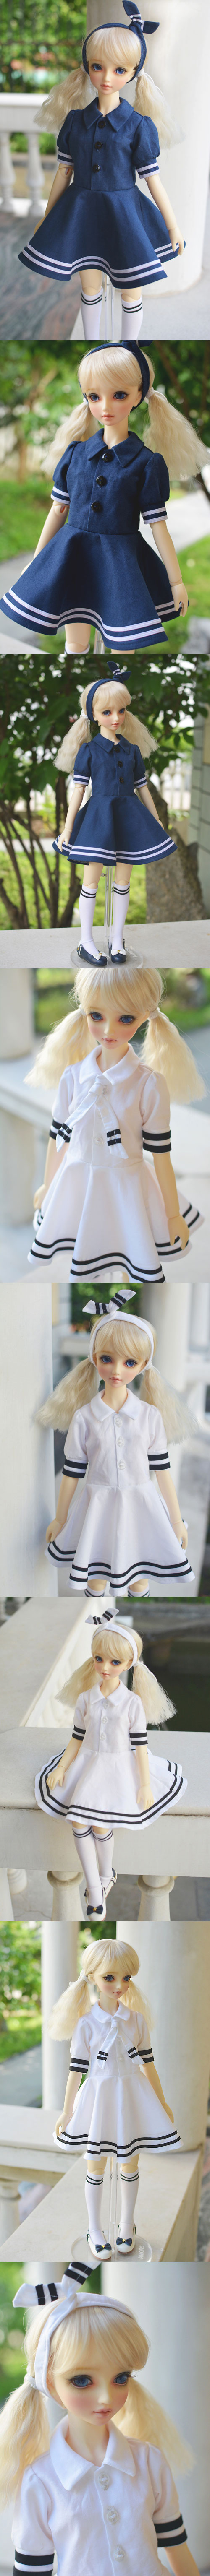 ドール服 SD10/MSD/サイズ人形衣装 A115  ネイビー色/白色